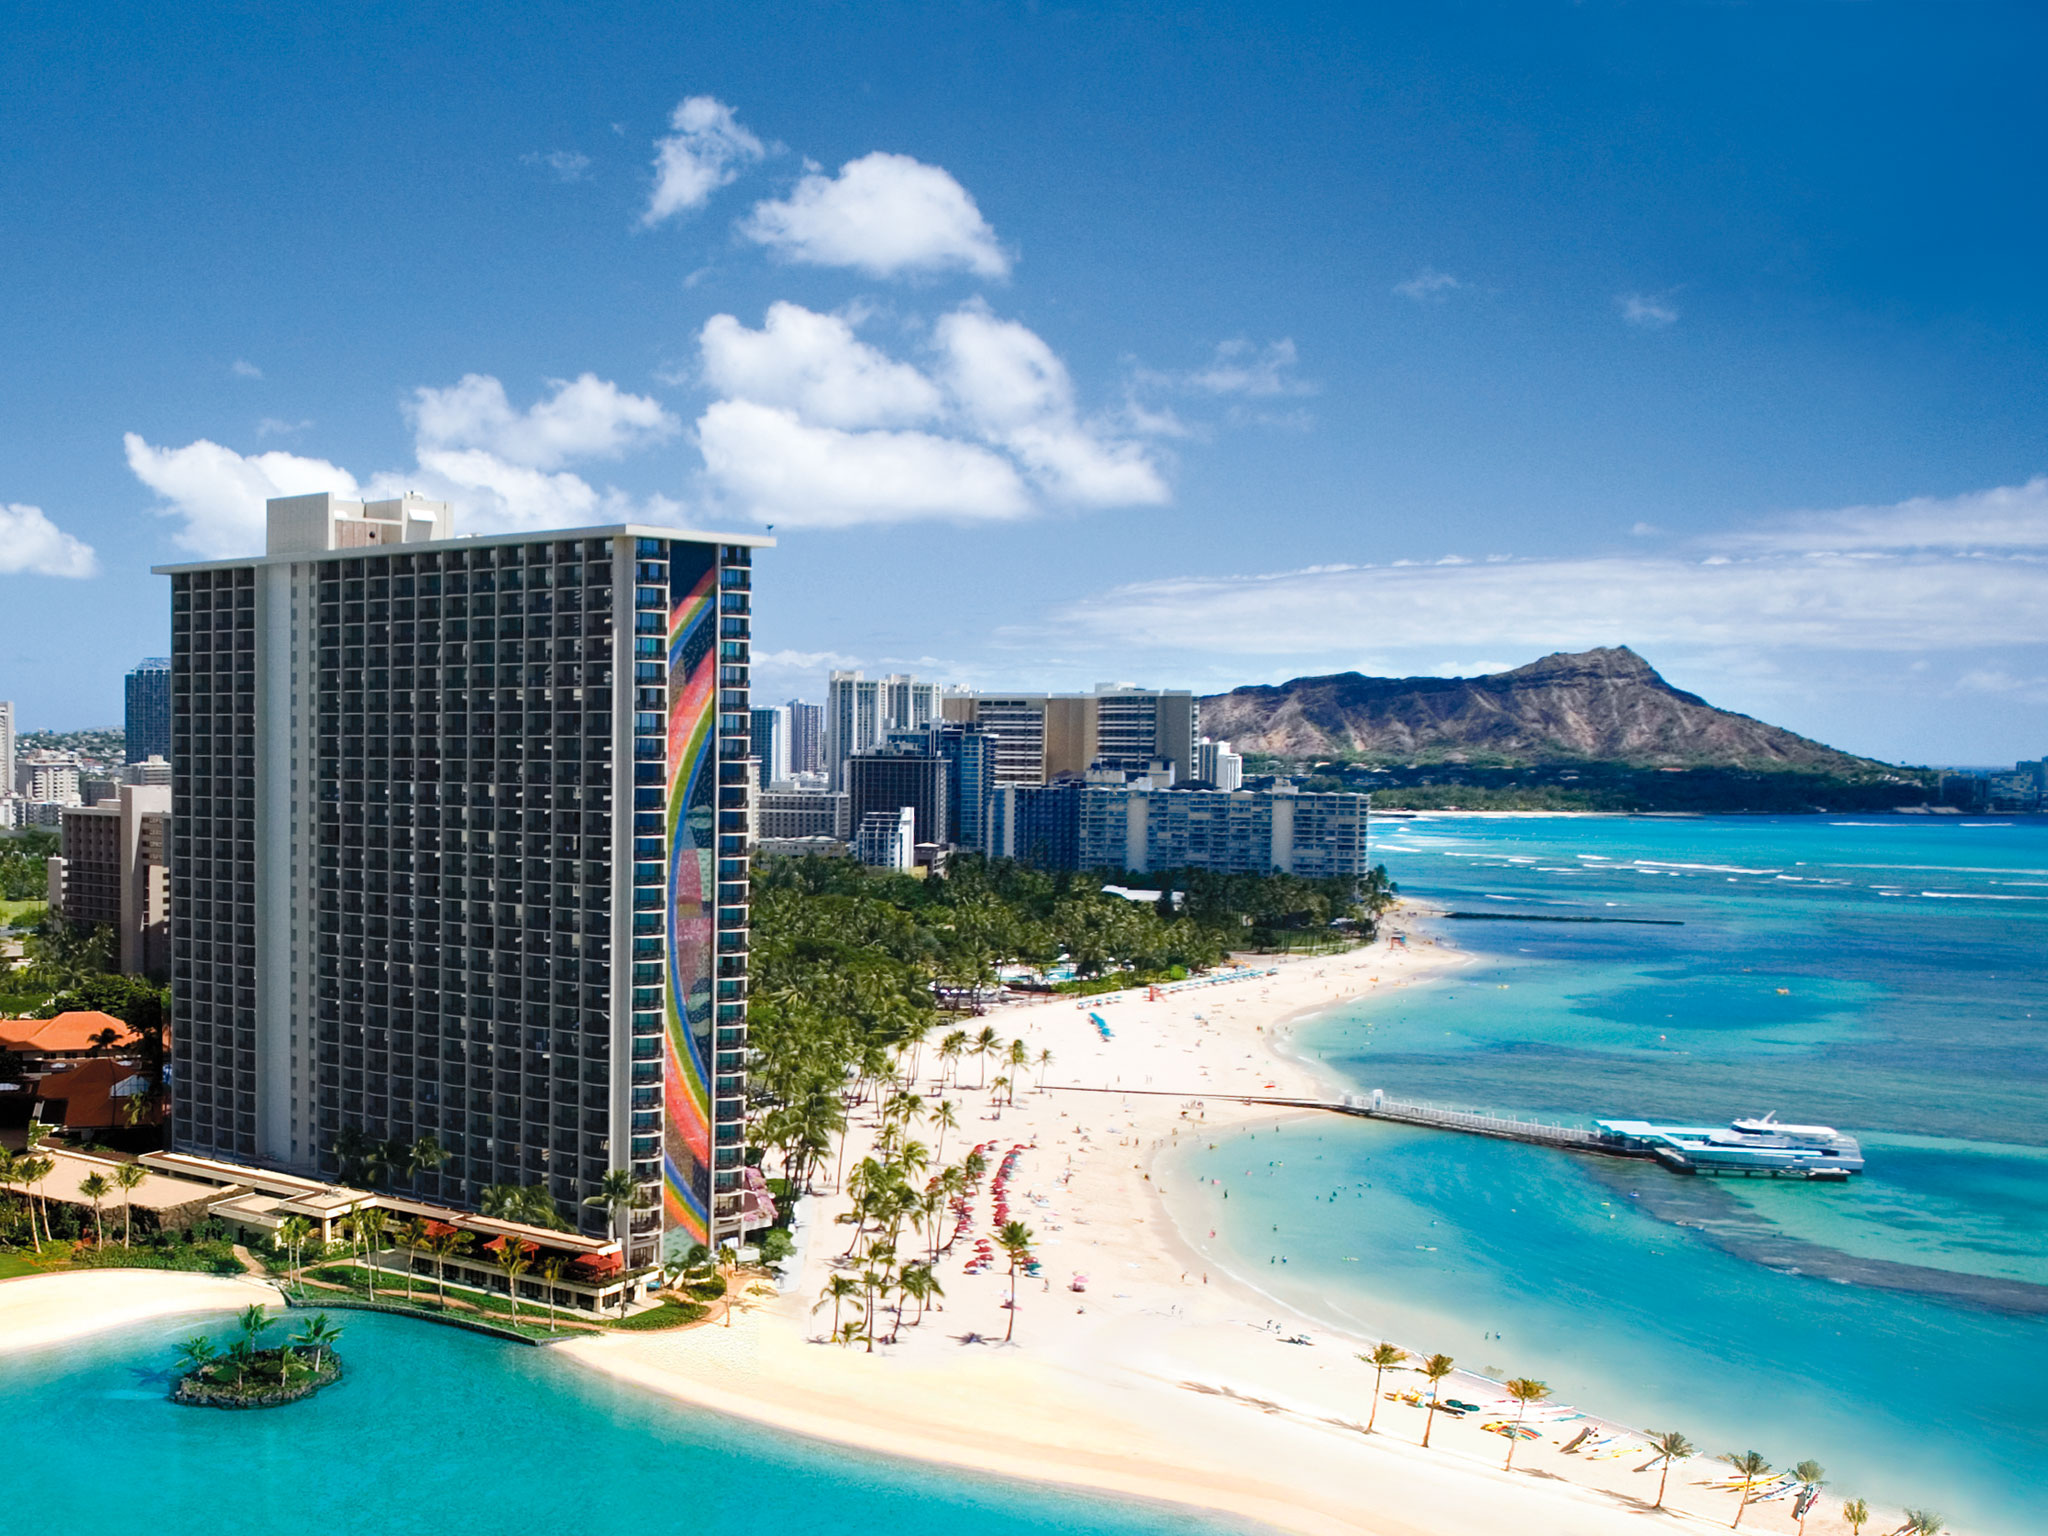 Waikiki Beach Hotel Pictures Desktop Wallpaper Image